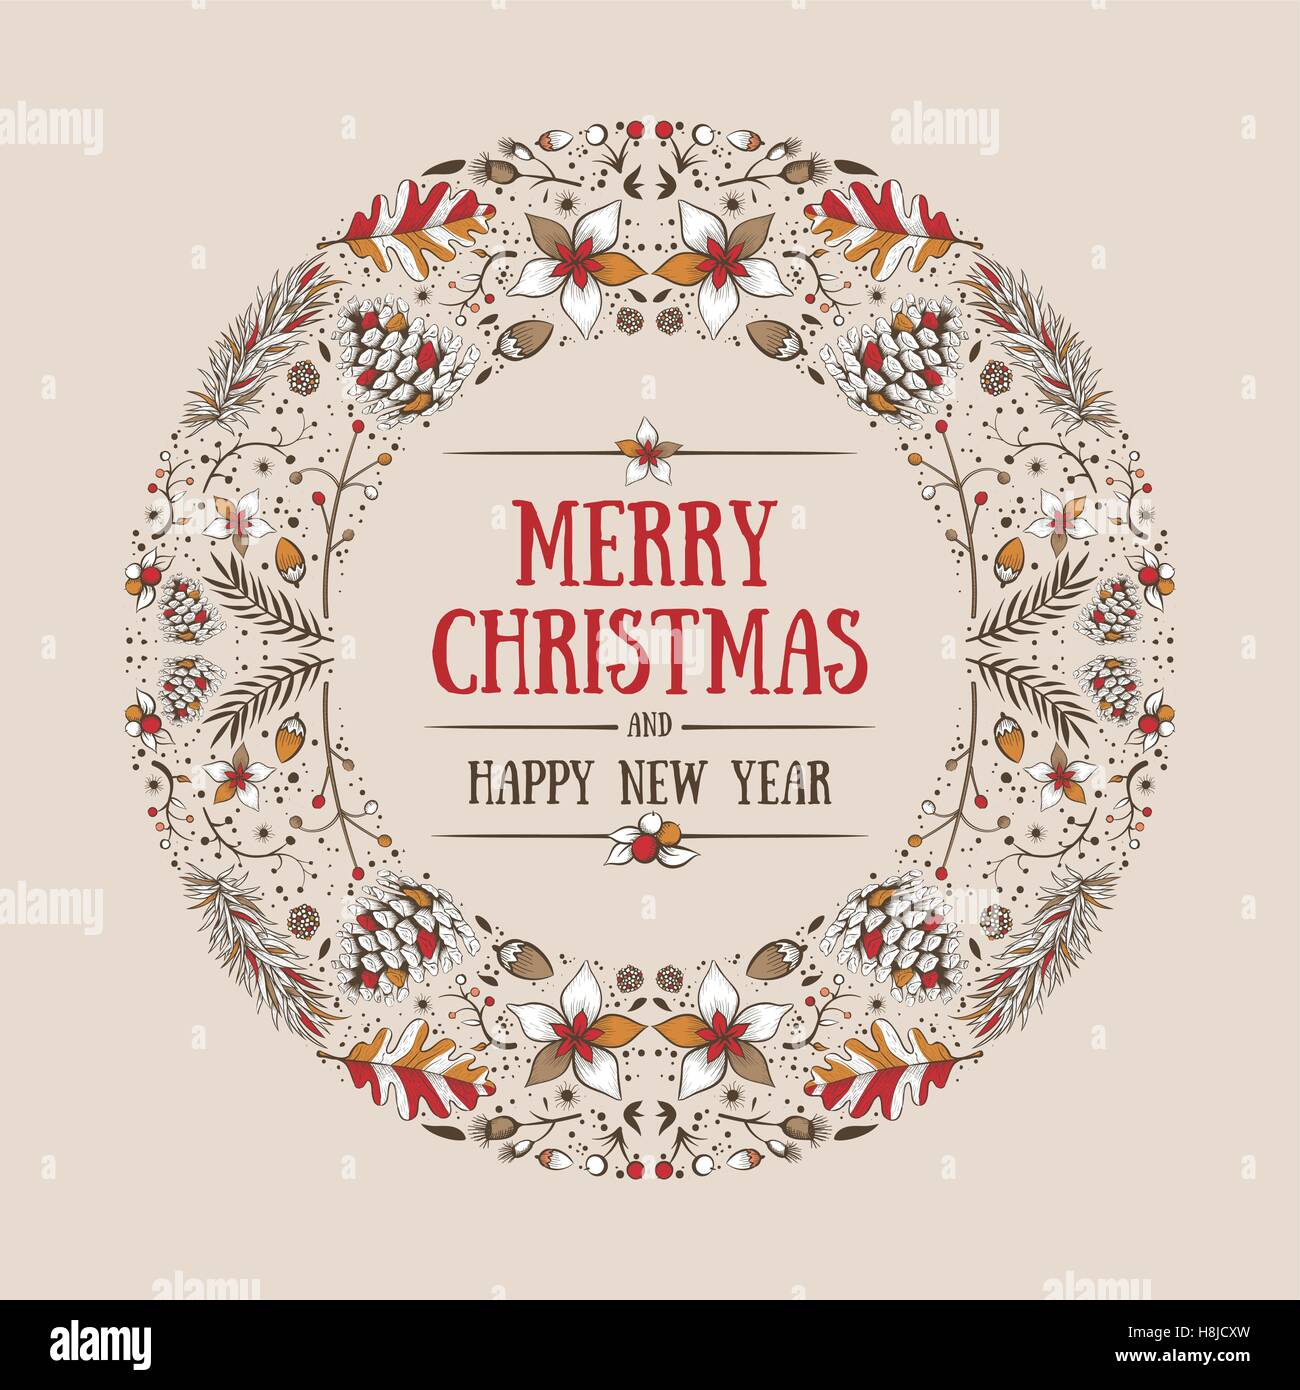 Vettore di Natale rotonda frame con disegnati a mano naturale elementi d'inverno. Natale greeting card design. Illustrazione Vettoriale